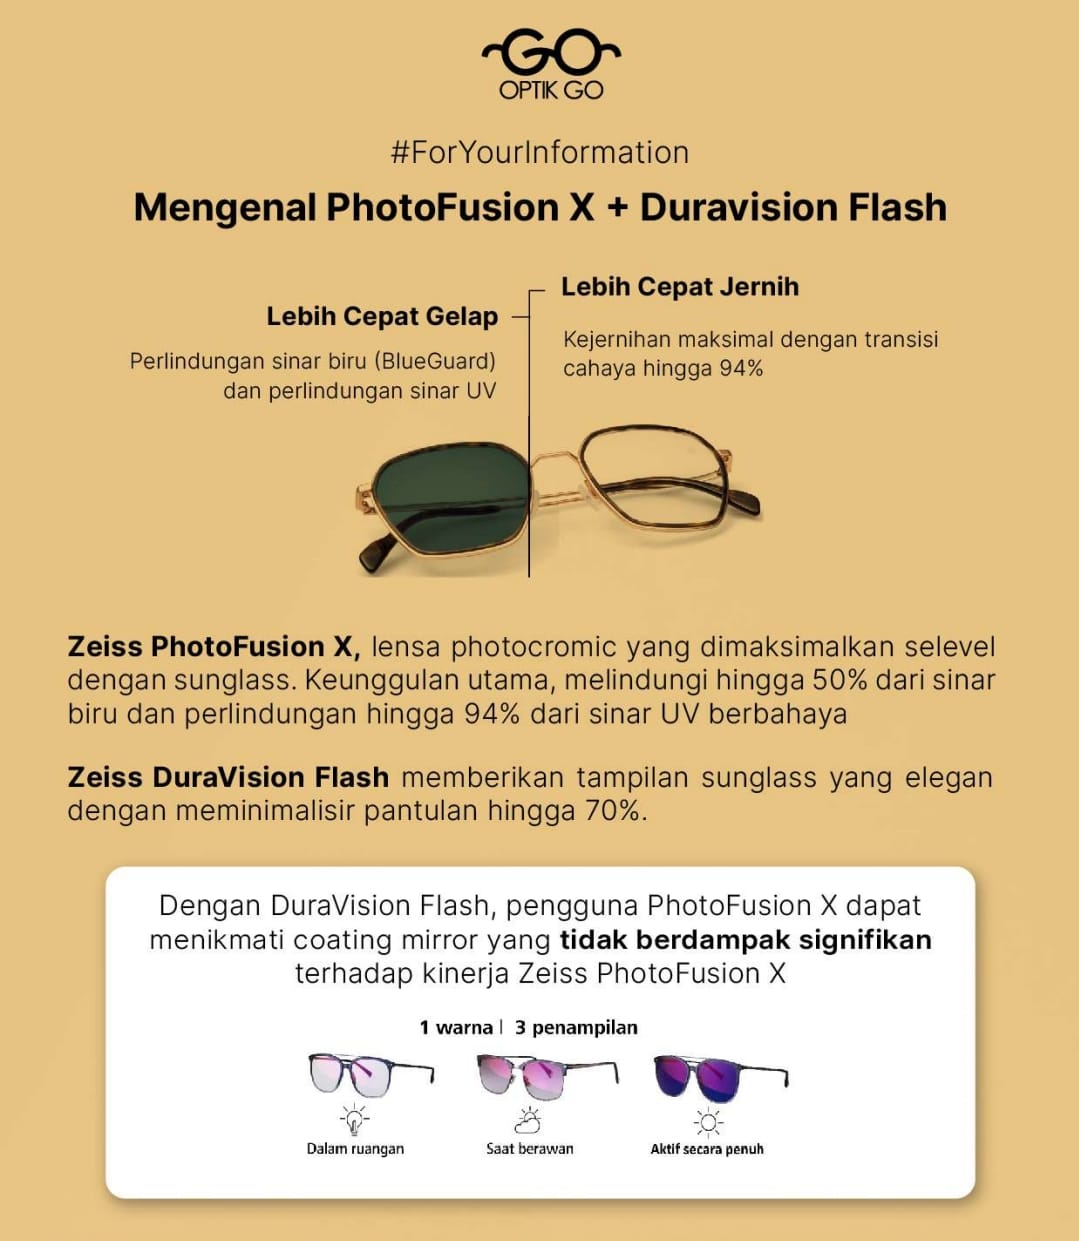 Mengenal PhotoFusion X + Duravision Flash